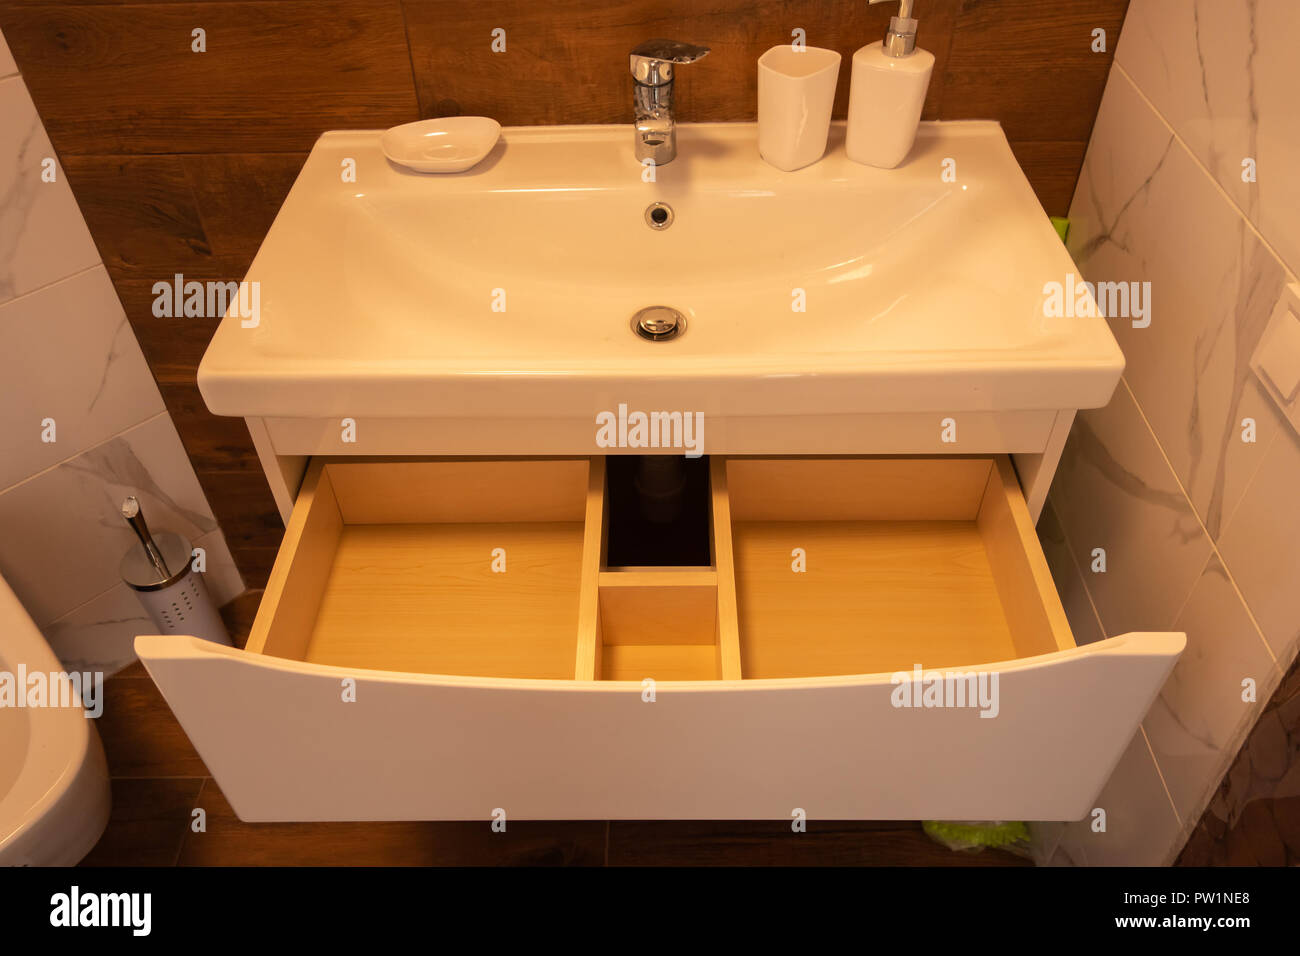 Modernes Interieur des Bad. Das Waschbecken ist aus weißem massive Shell auf der Tischplatte aus Marmor in der Farbe aus Holz. Minimalismus und Einfachheit in einem hellen, funktionalen Interieur. Stockfoto